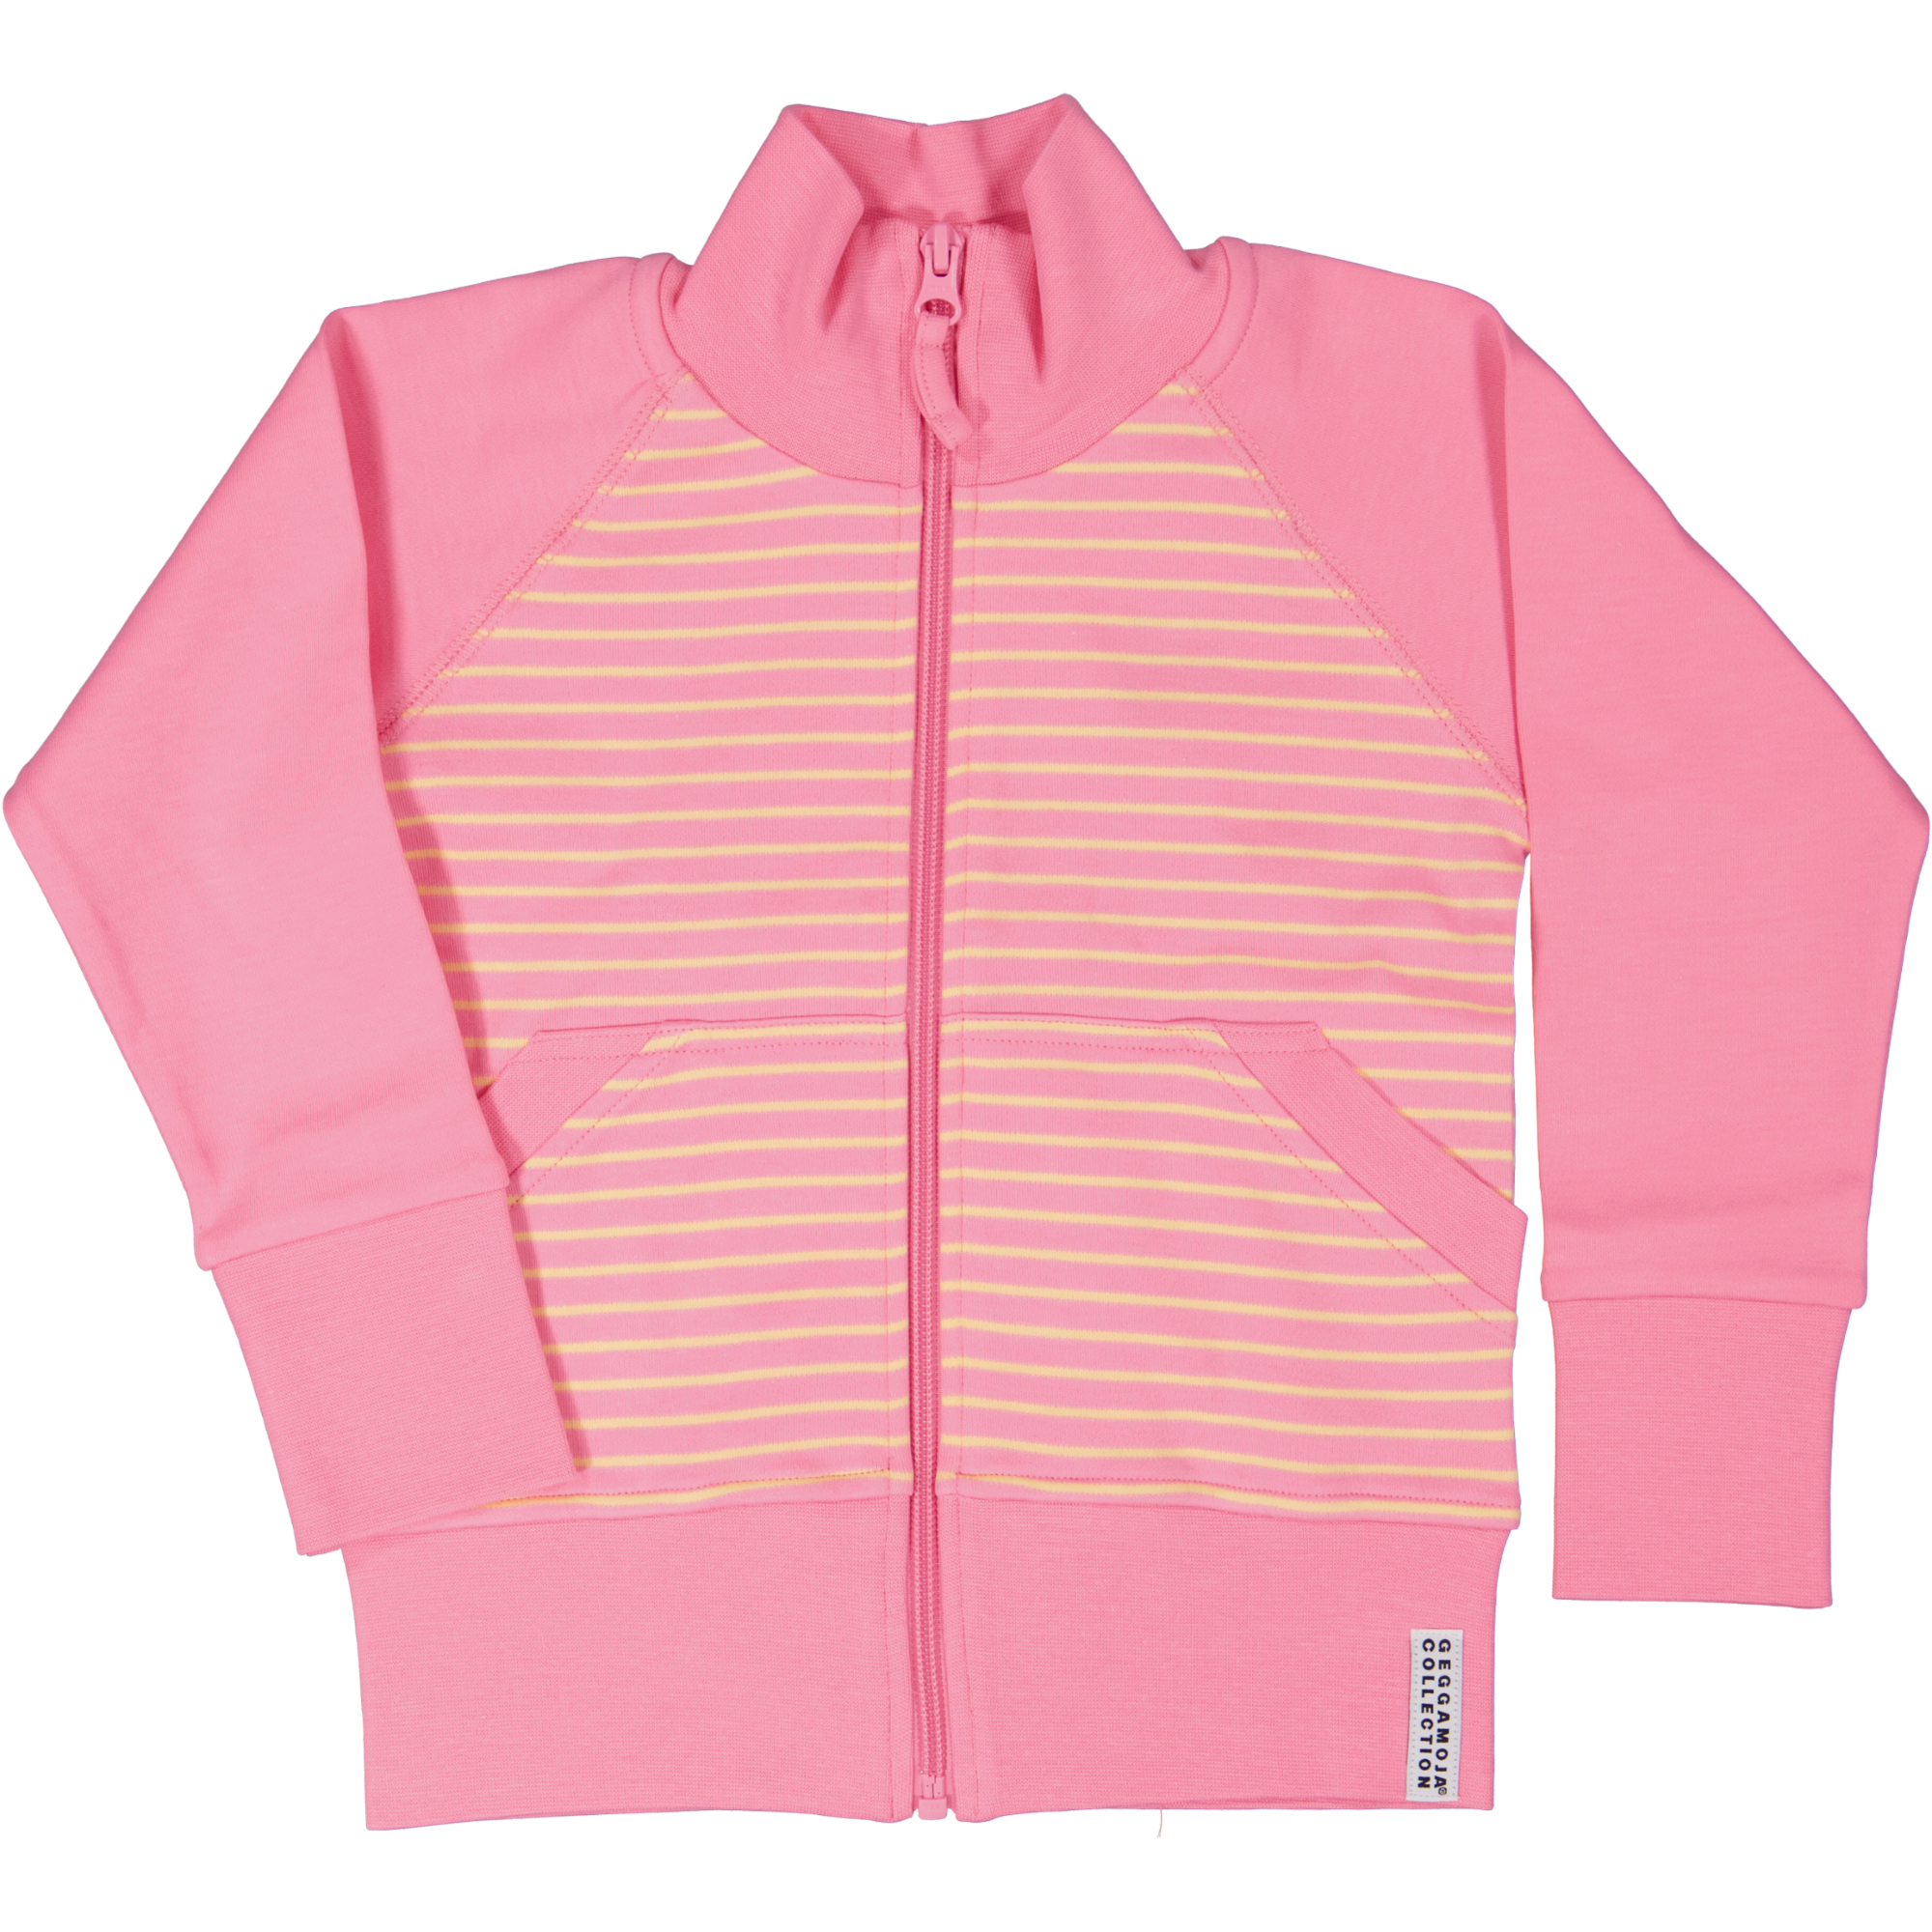 Zip sweater Pink/yellow  122/128